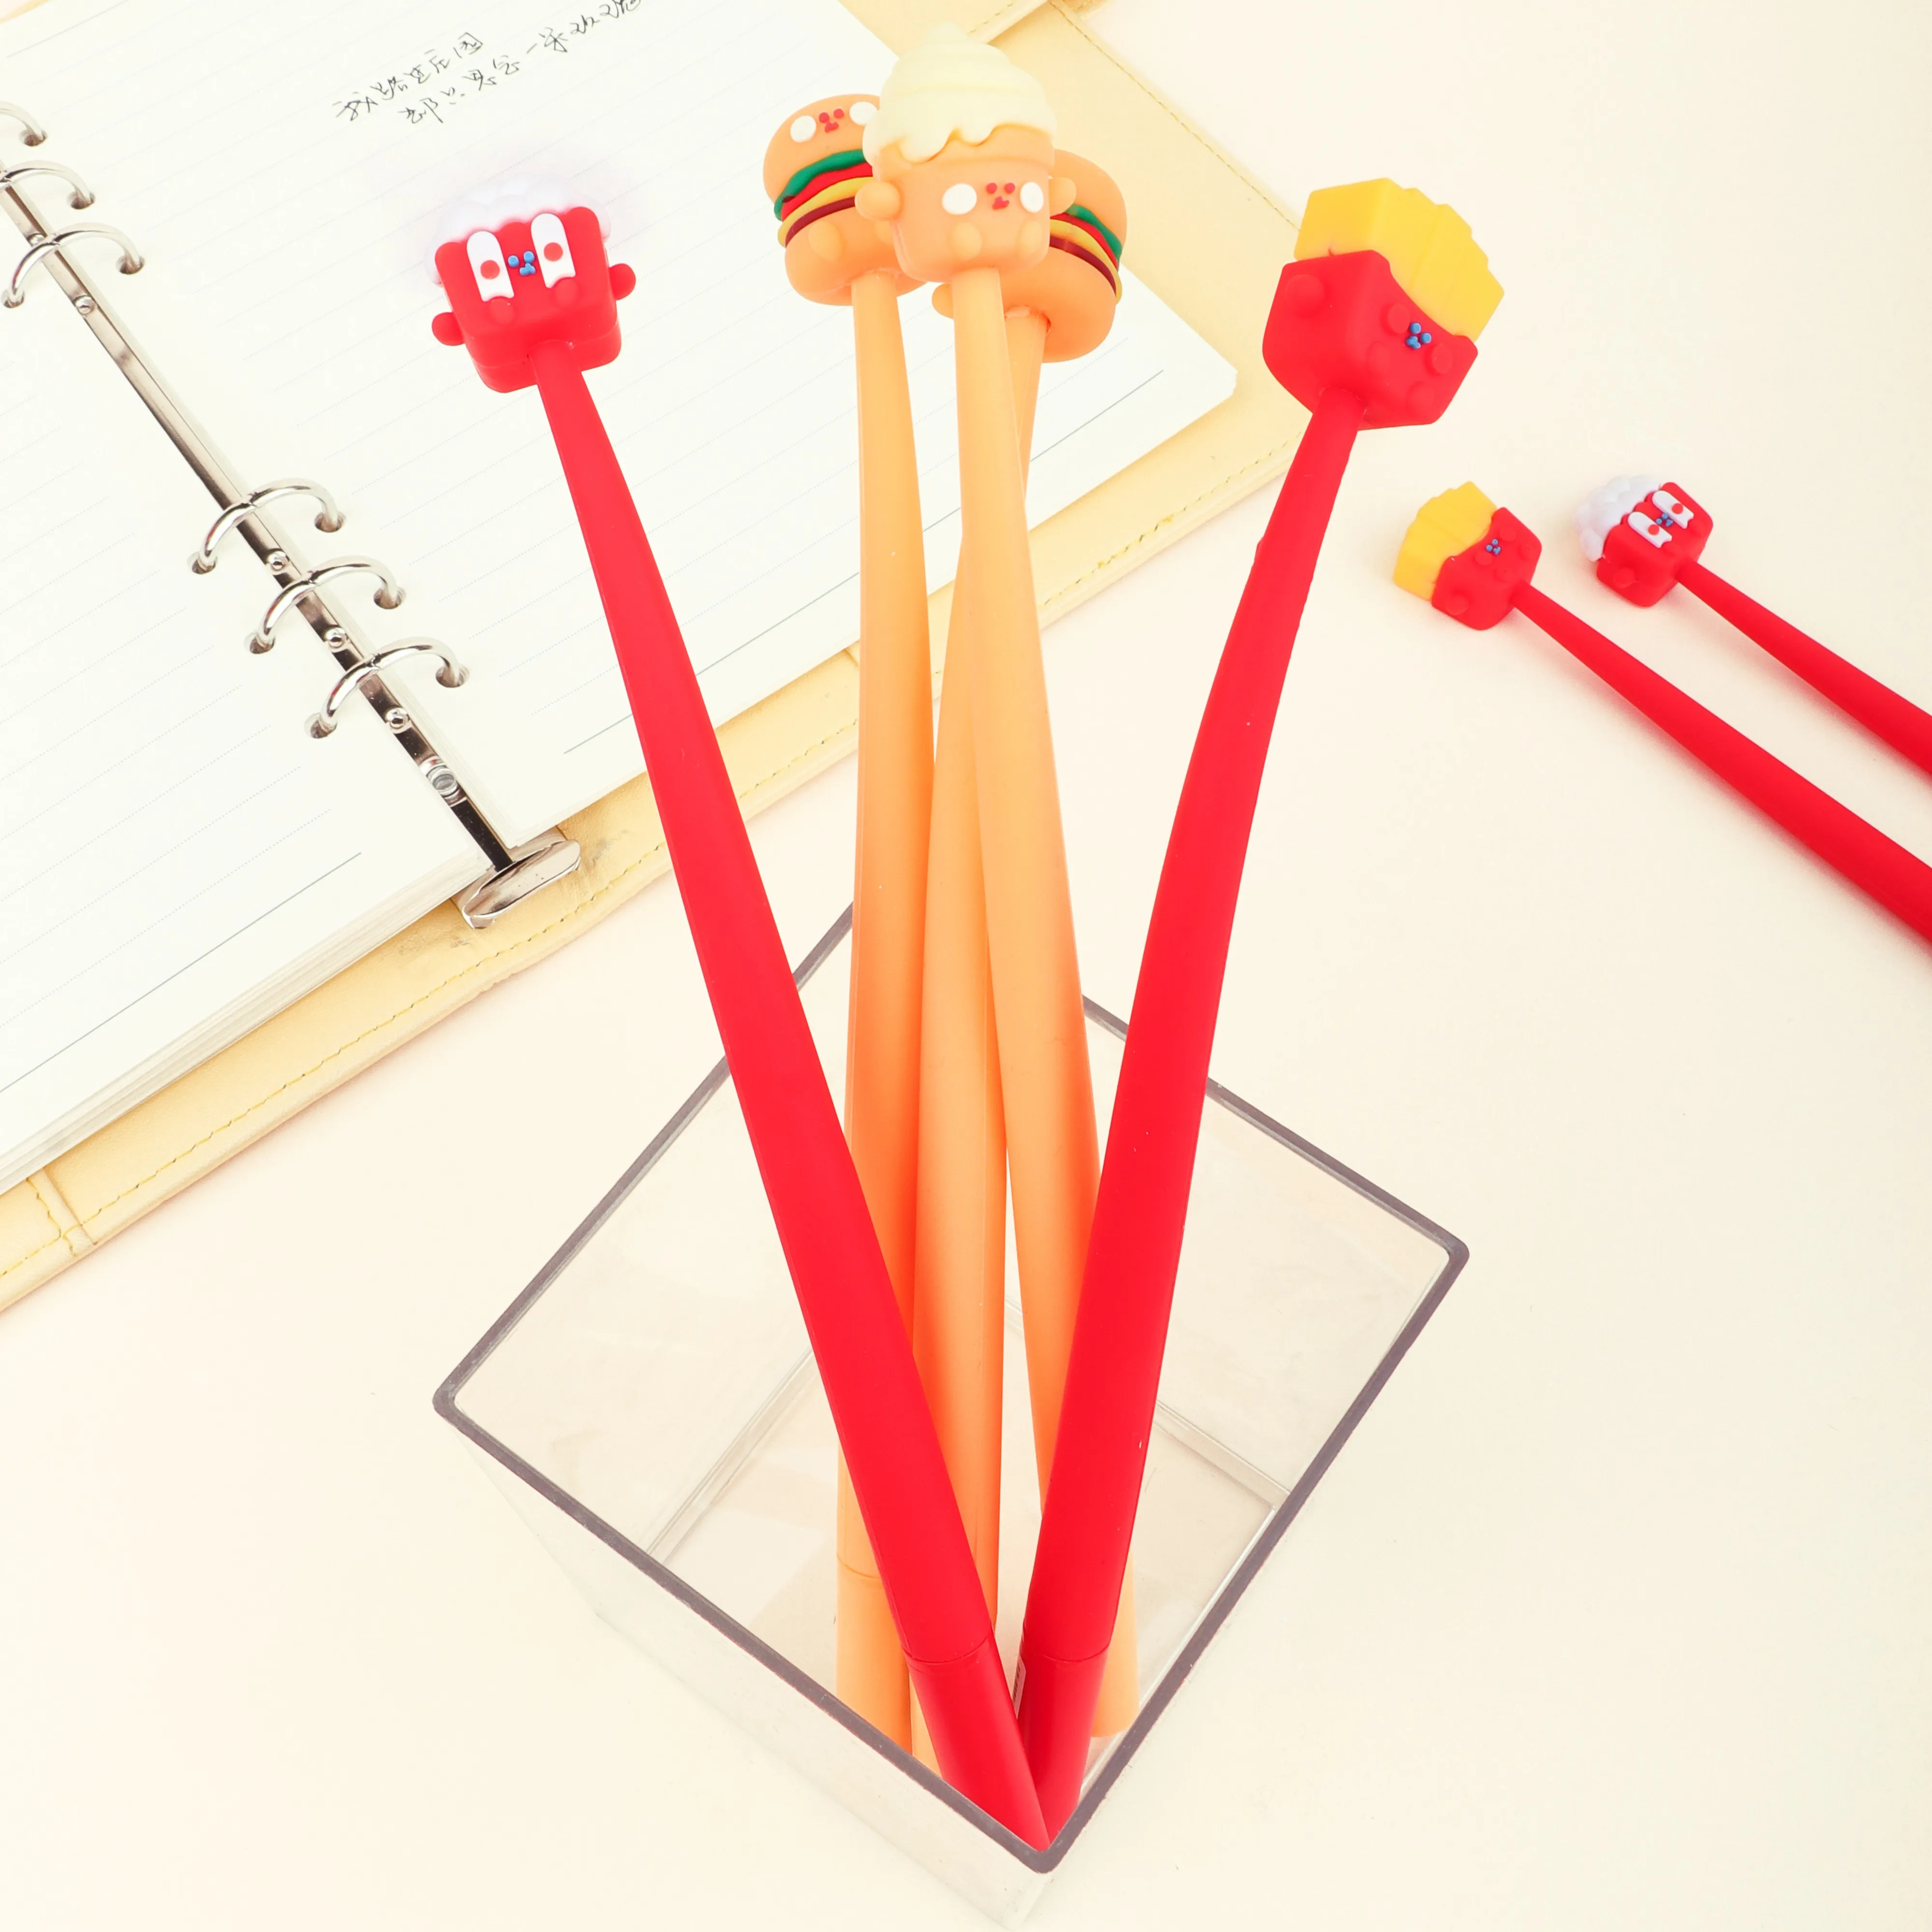 KUKI Cute New Design penna Gel di plastica di vendita calda miglior prezzo penna Gel promozionale, penna gel kawaii di plastica di forma creativa personalizzata